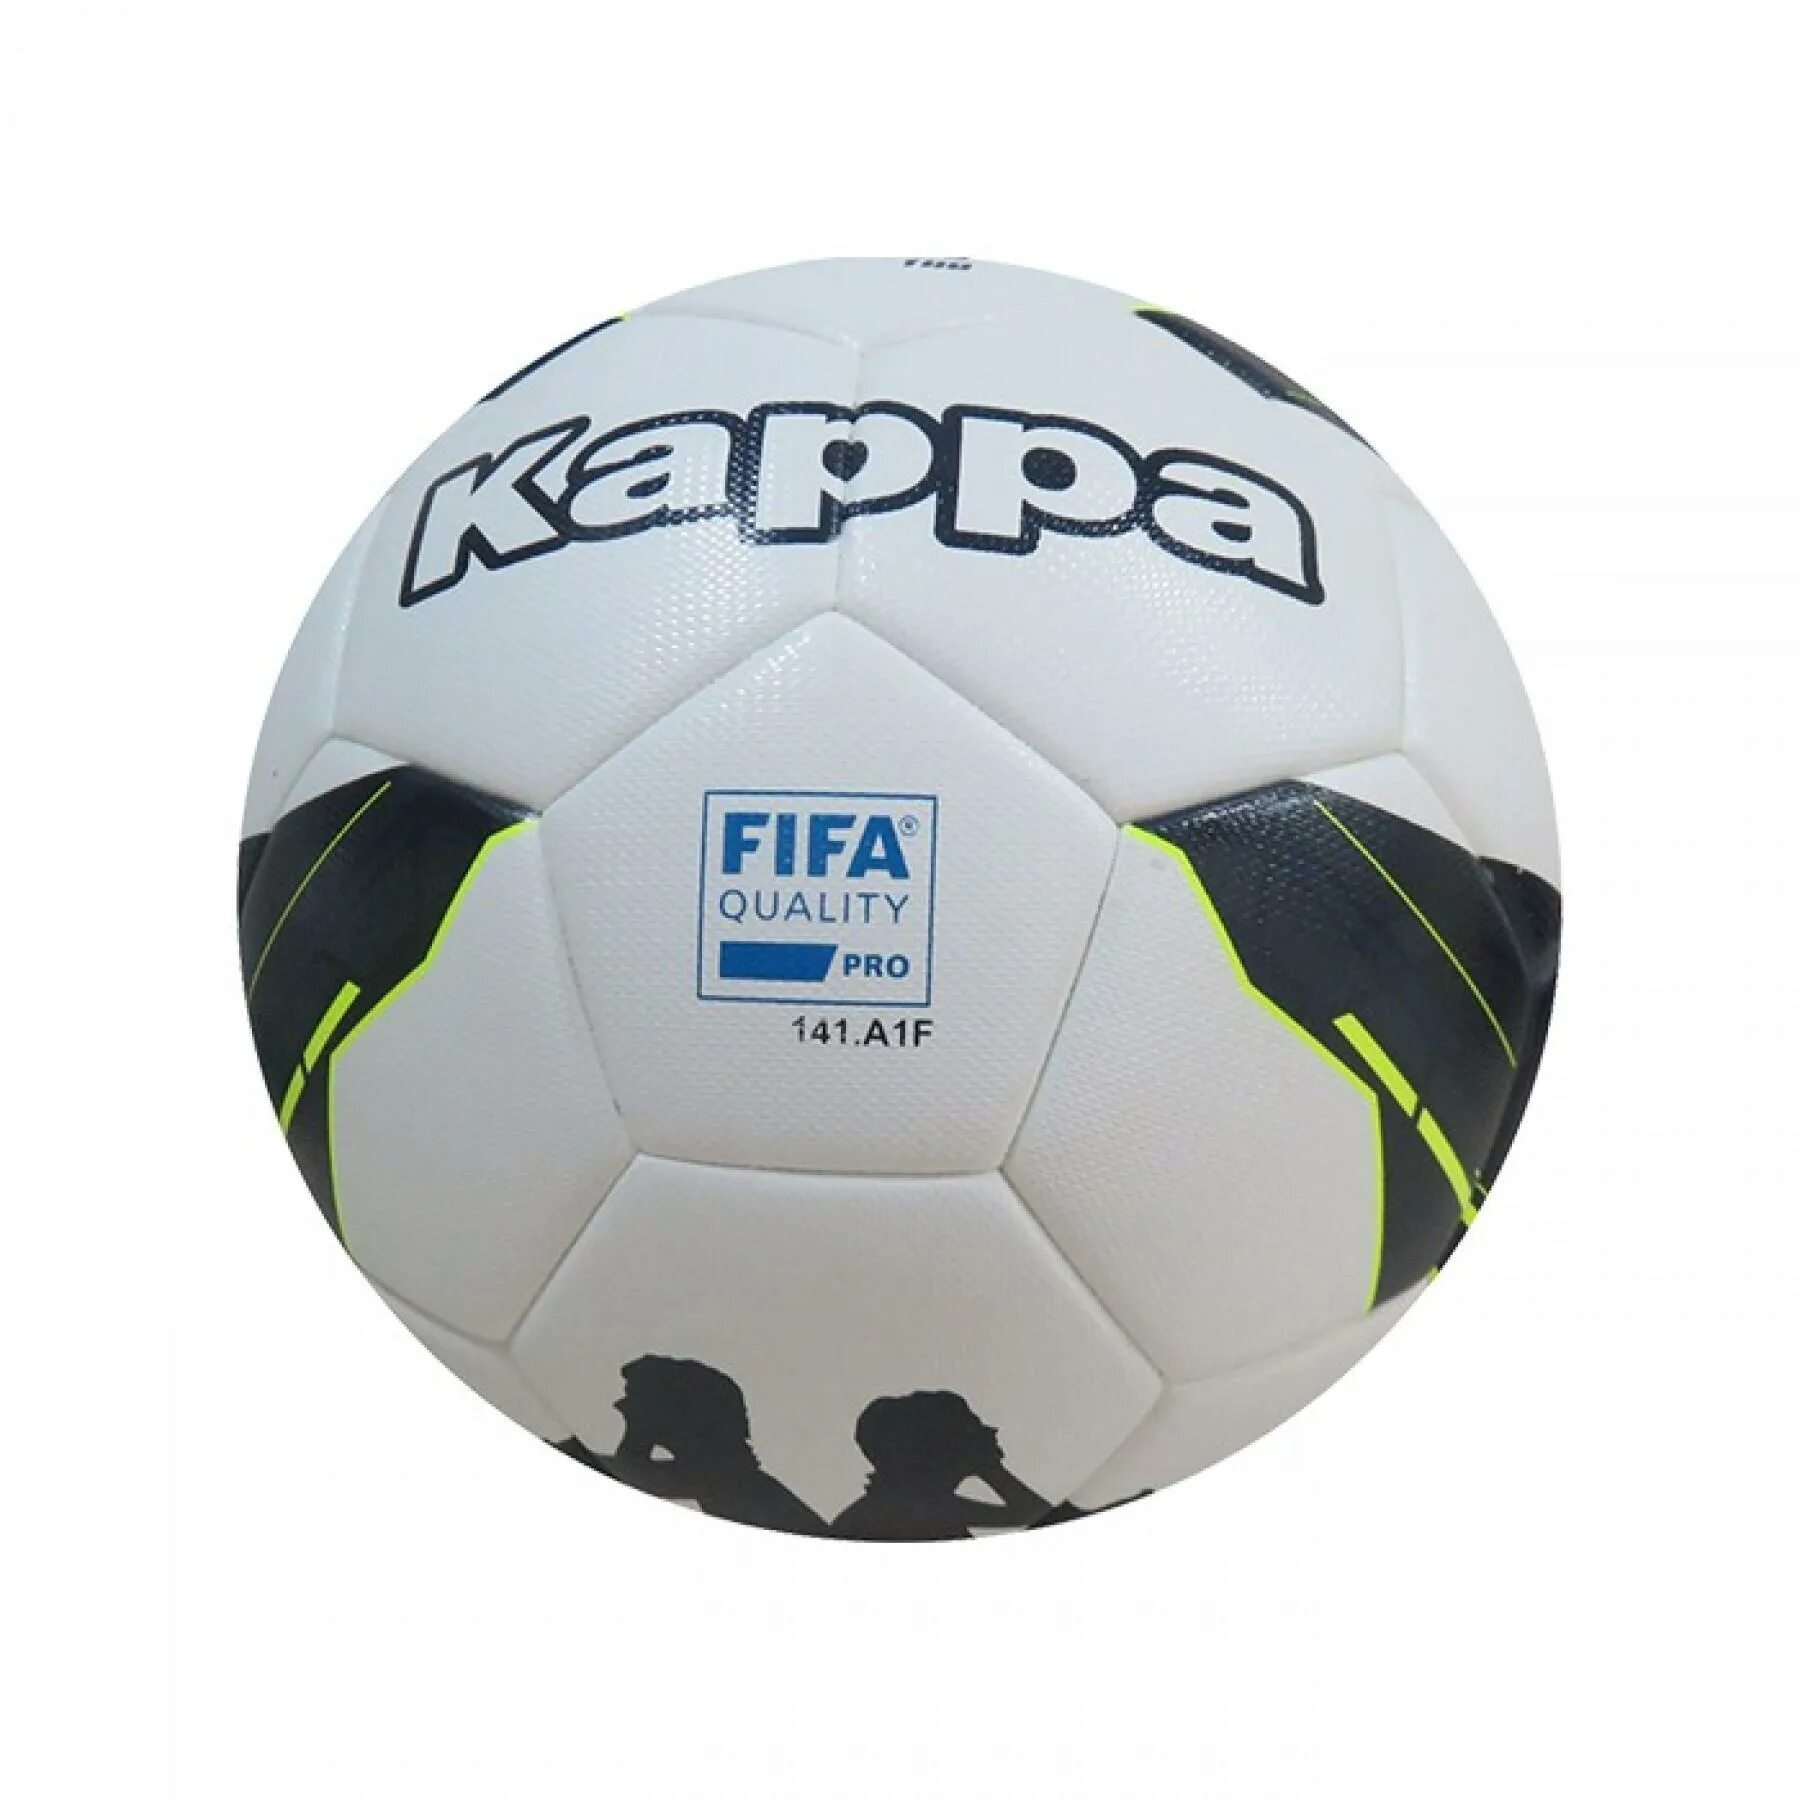 Мячи fifa pro. 1006226 Мяч Каппа. Мяч adidas FIFA quality Pro 202.f5y цена. Мяч ФИФА код 1006226 Каппа.